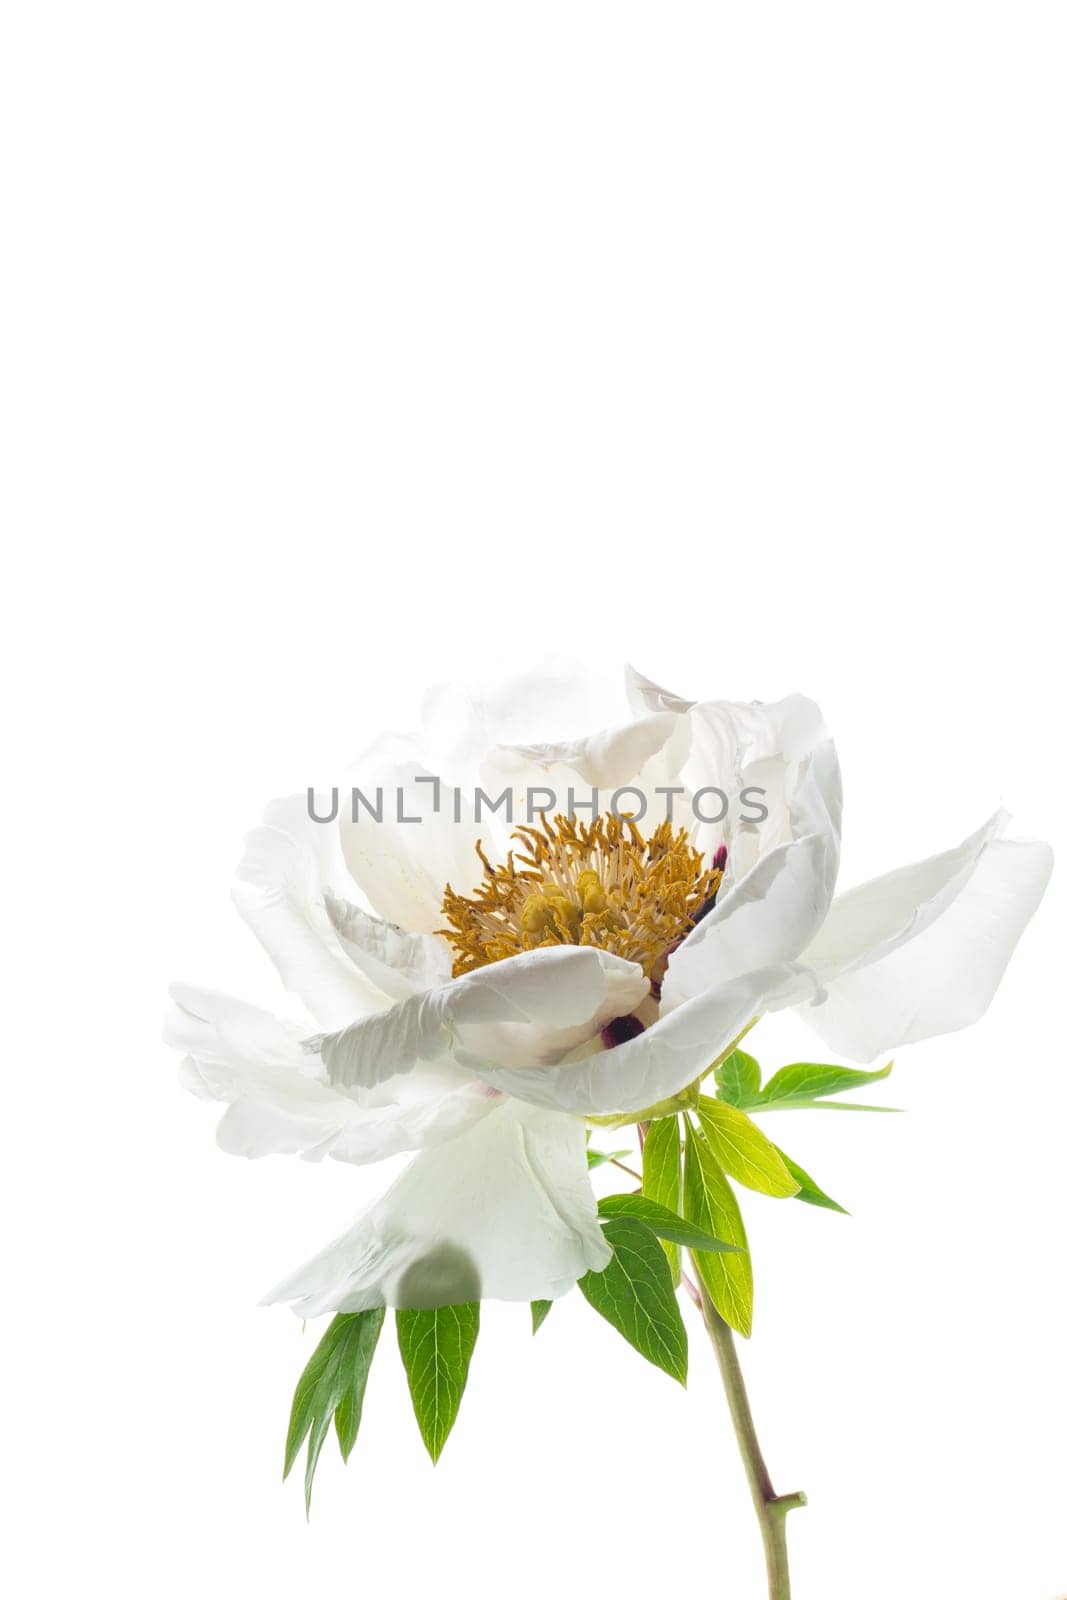 White tree peony flower, isolated on white background by Rawlik